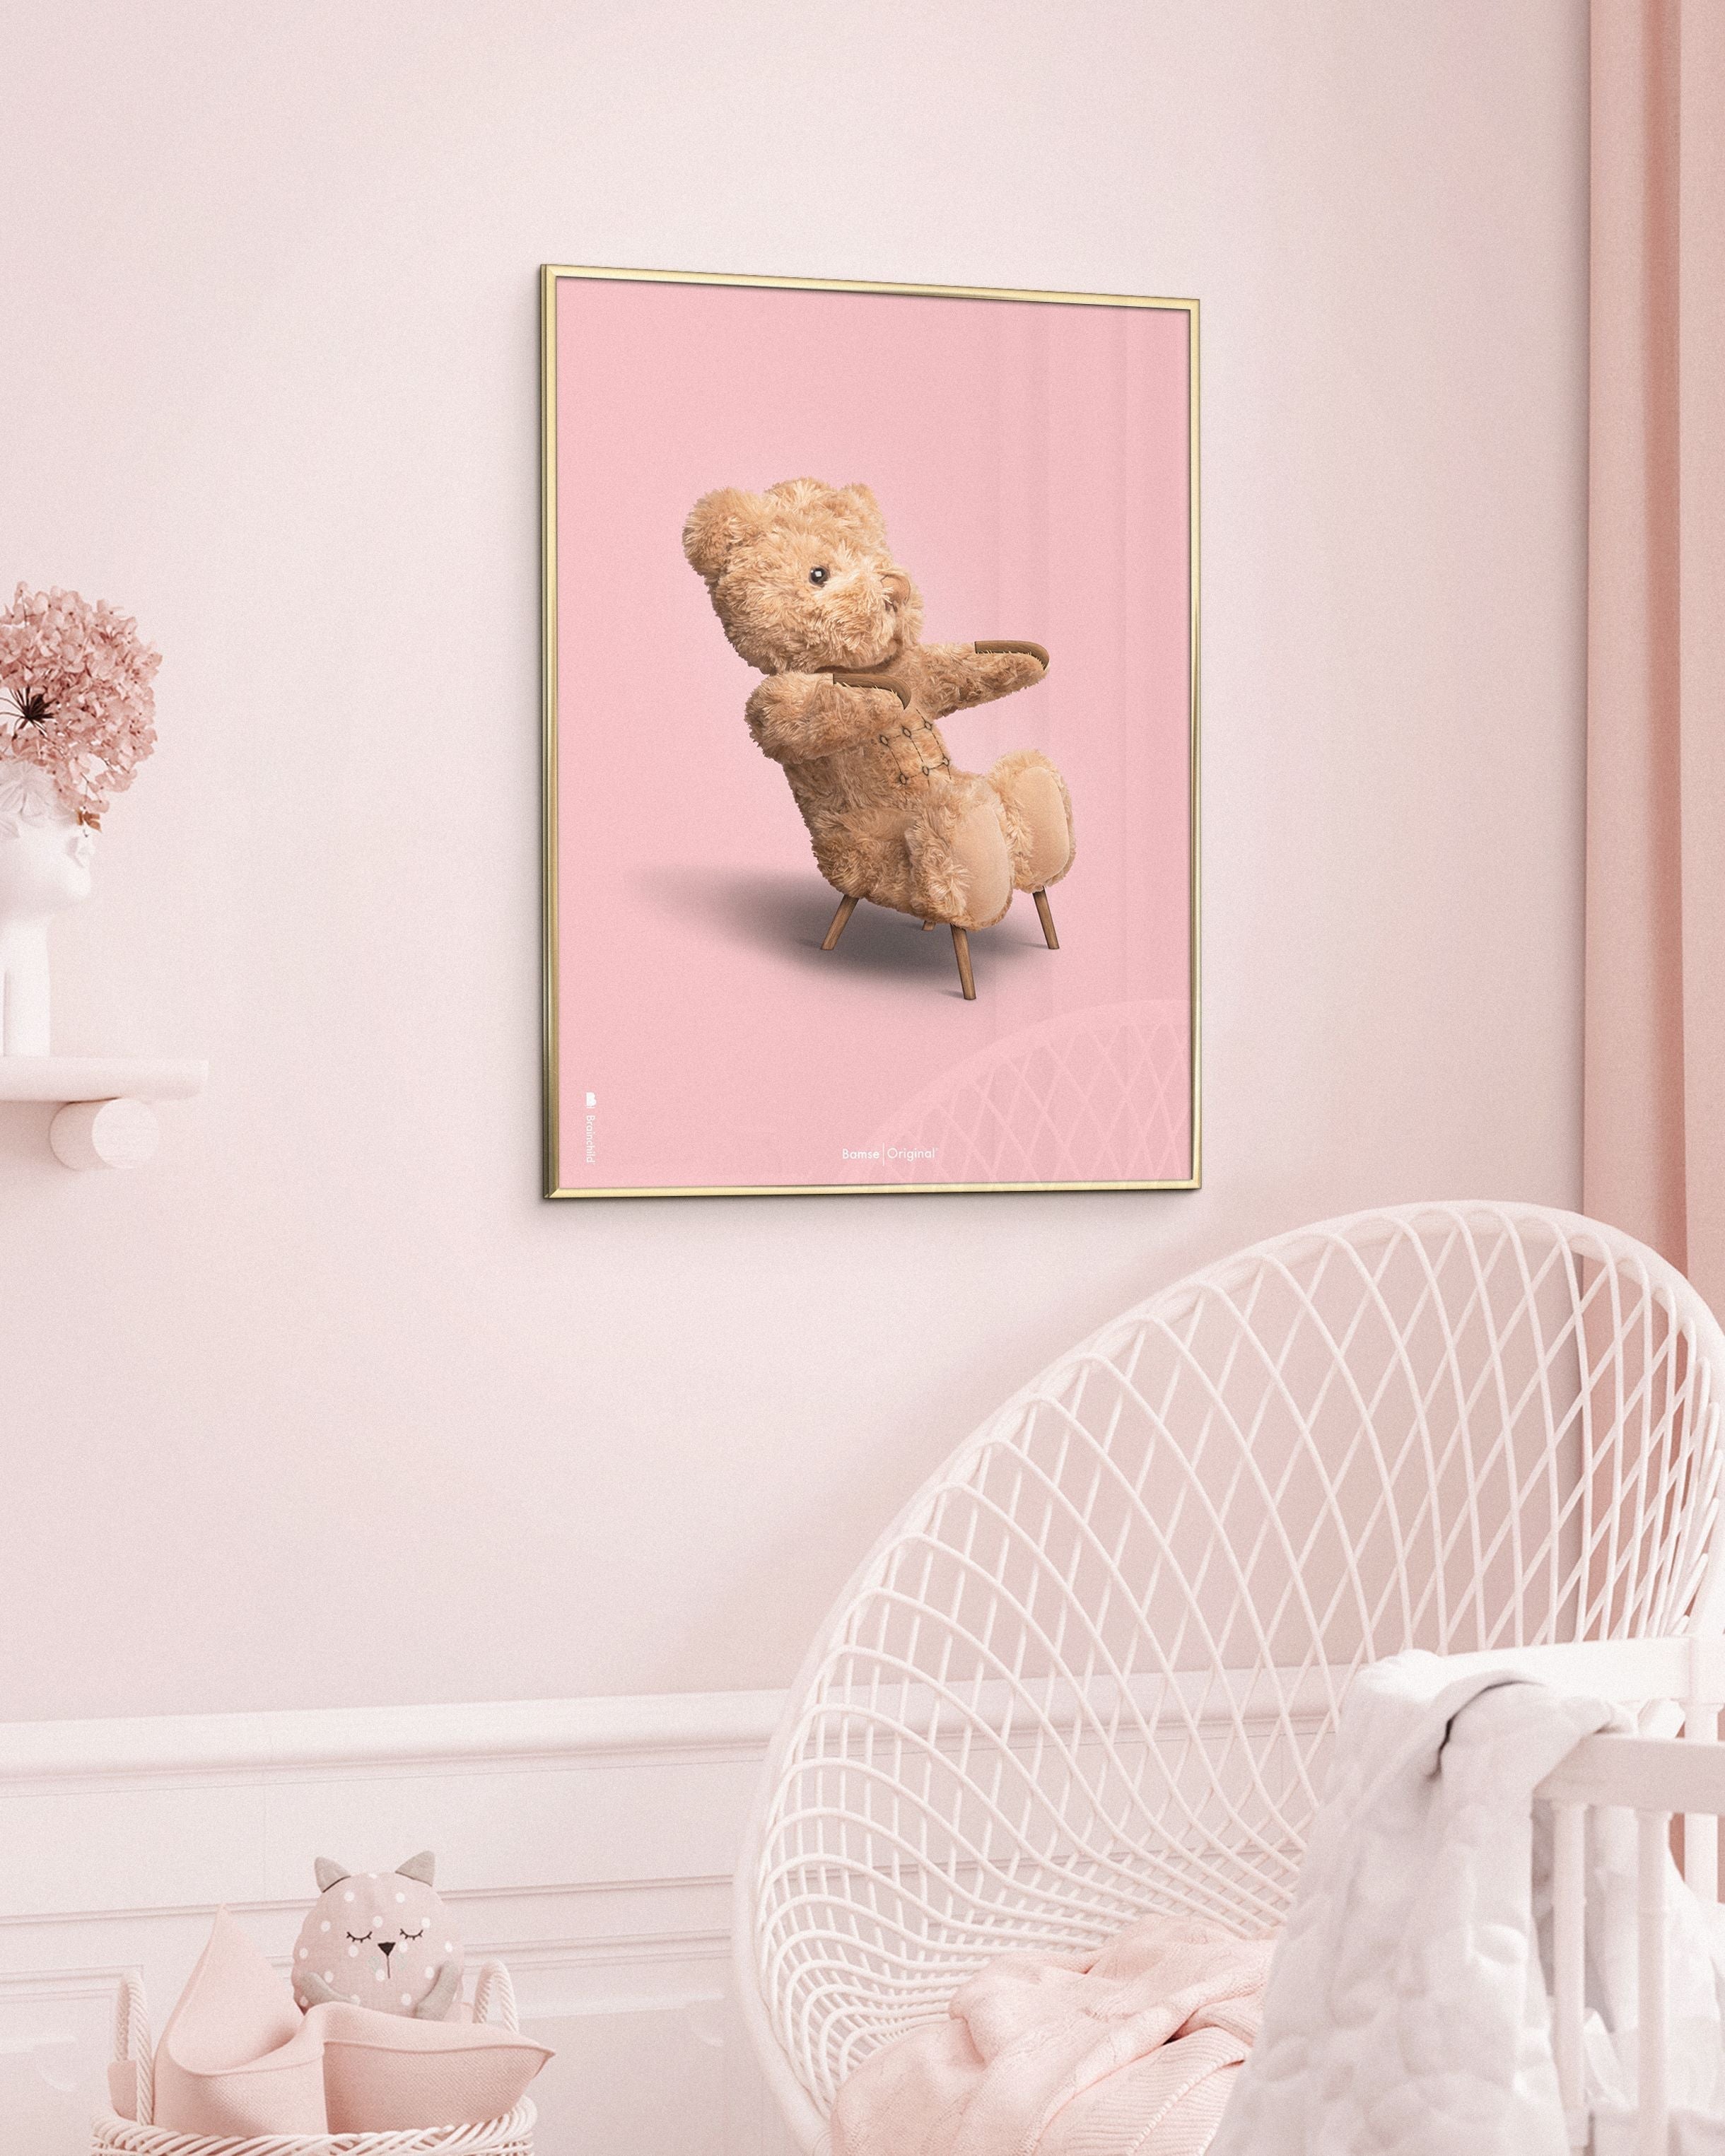 Frame di colore da gioco per poster in ottone da poster classico da un'orsacchiotto.